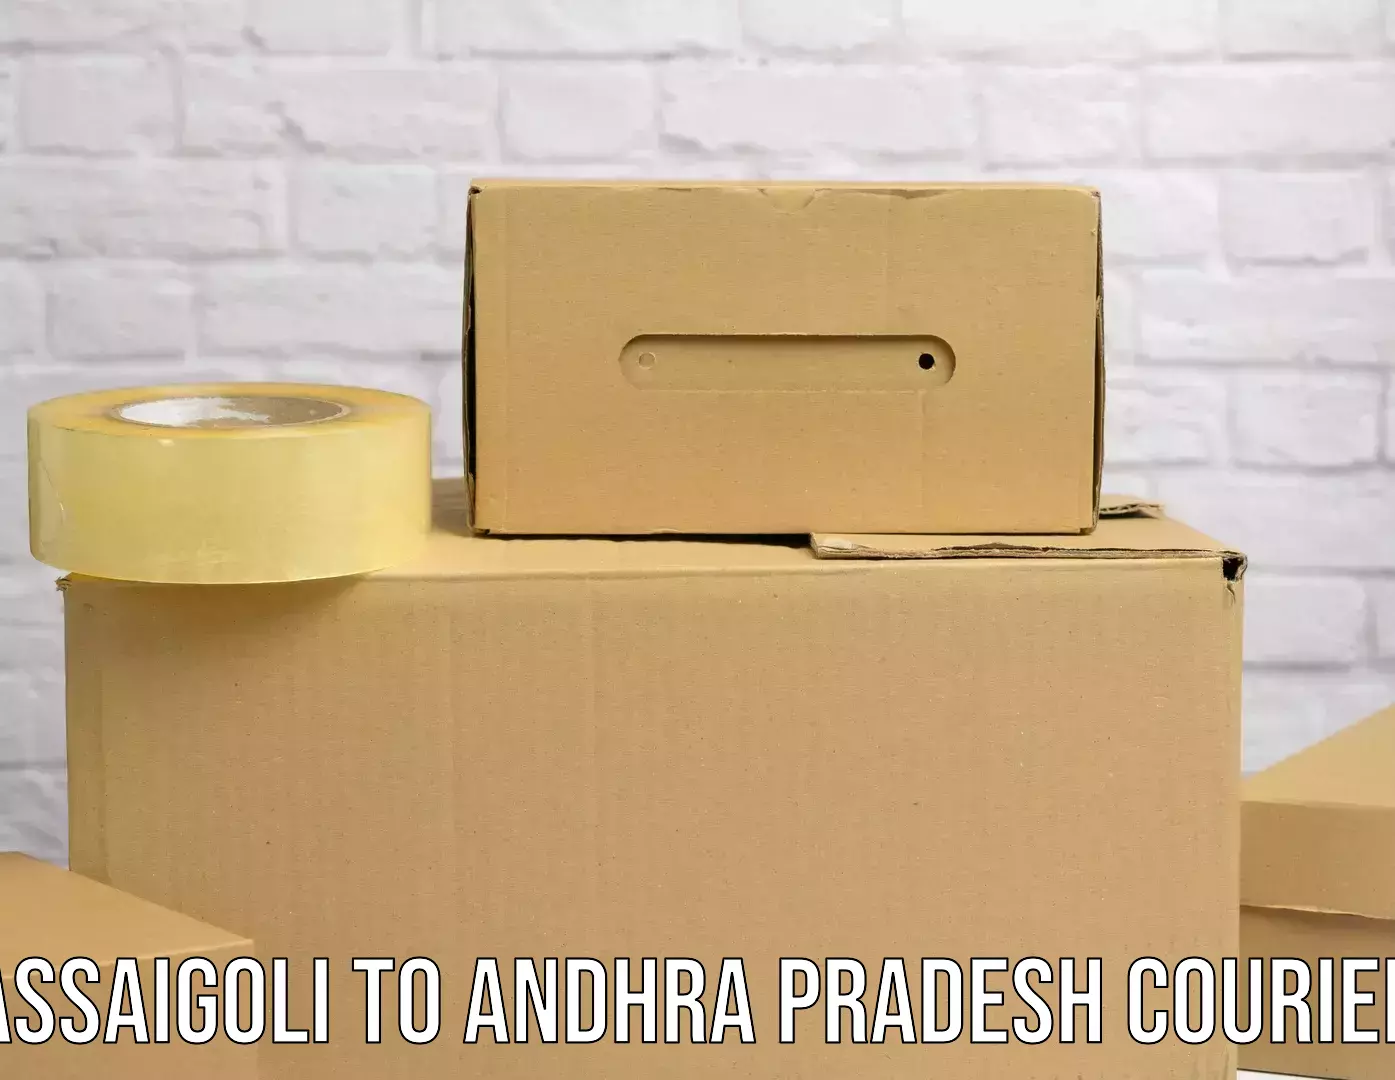 Air courier services Assaigoli to Andhra Pradesh